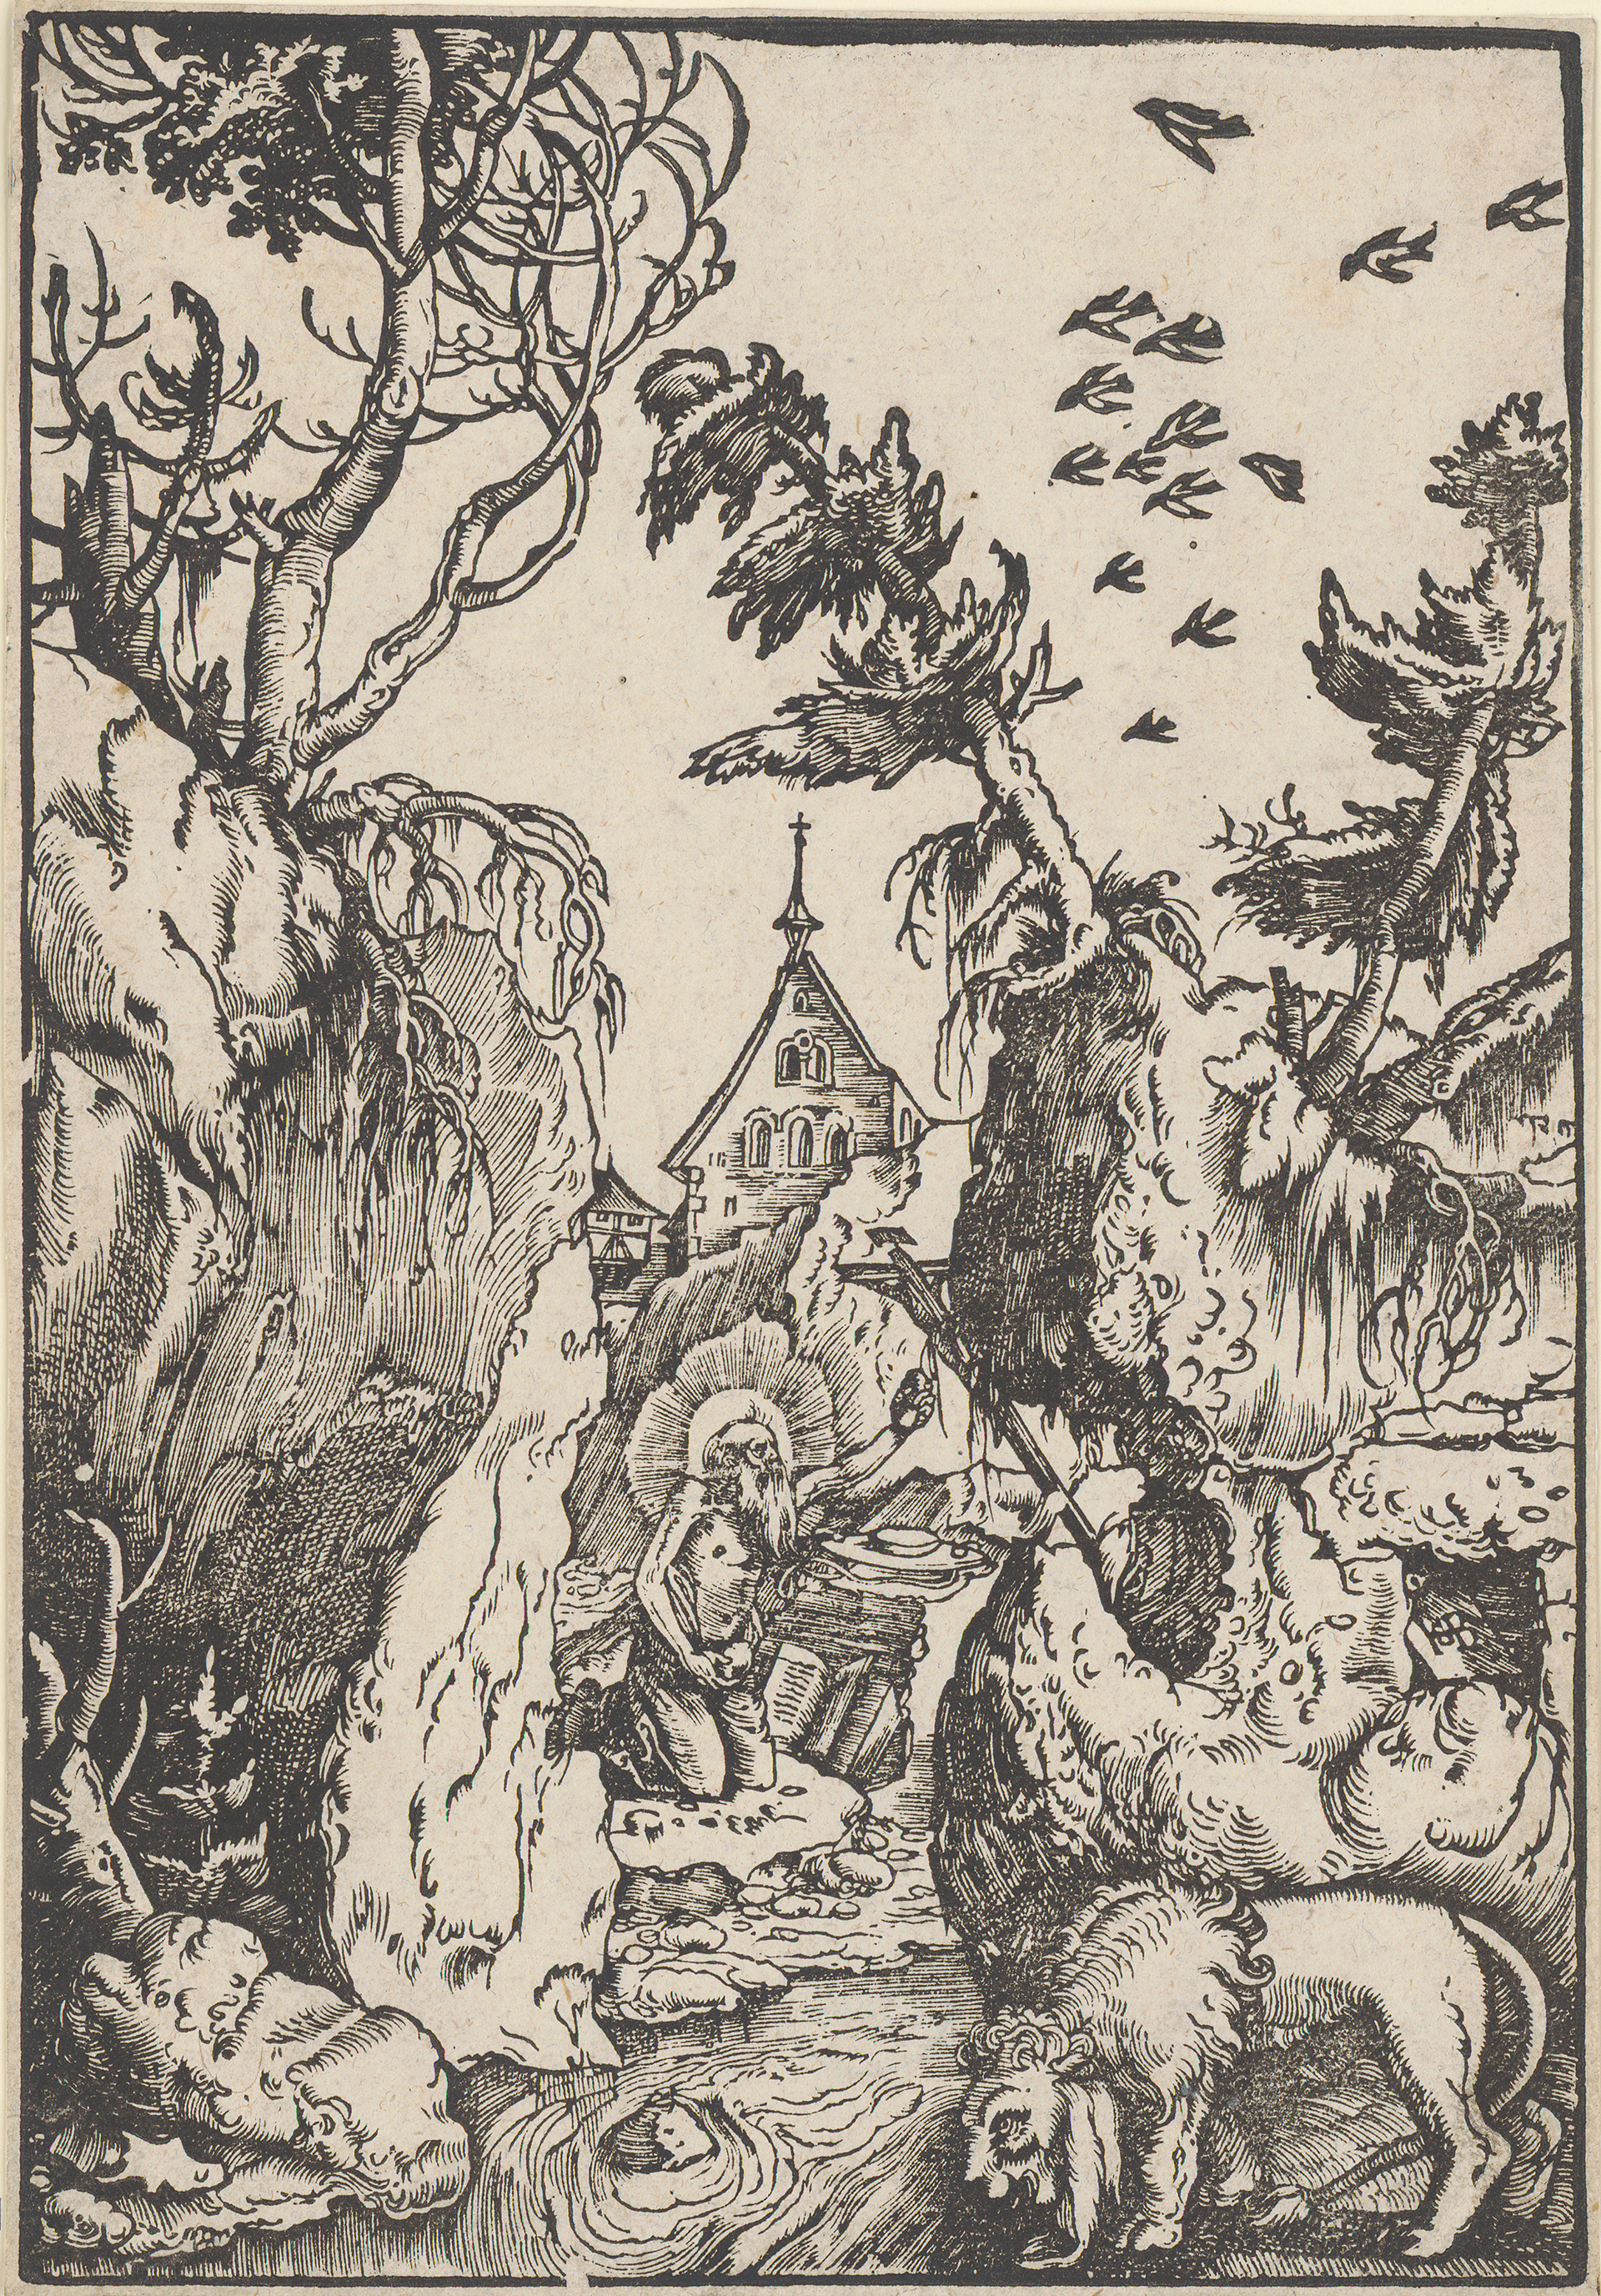 Abbildung des Werks "Der heilige Hieronymus als Büßer in einer Schlucht" von Hans Baldung Grien, entstanden um 1511, aus der Hamburger Kunsthalle.